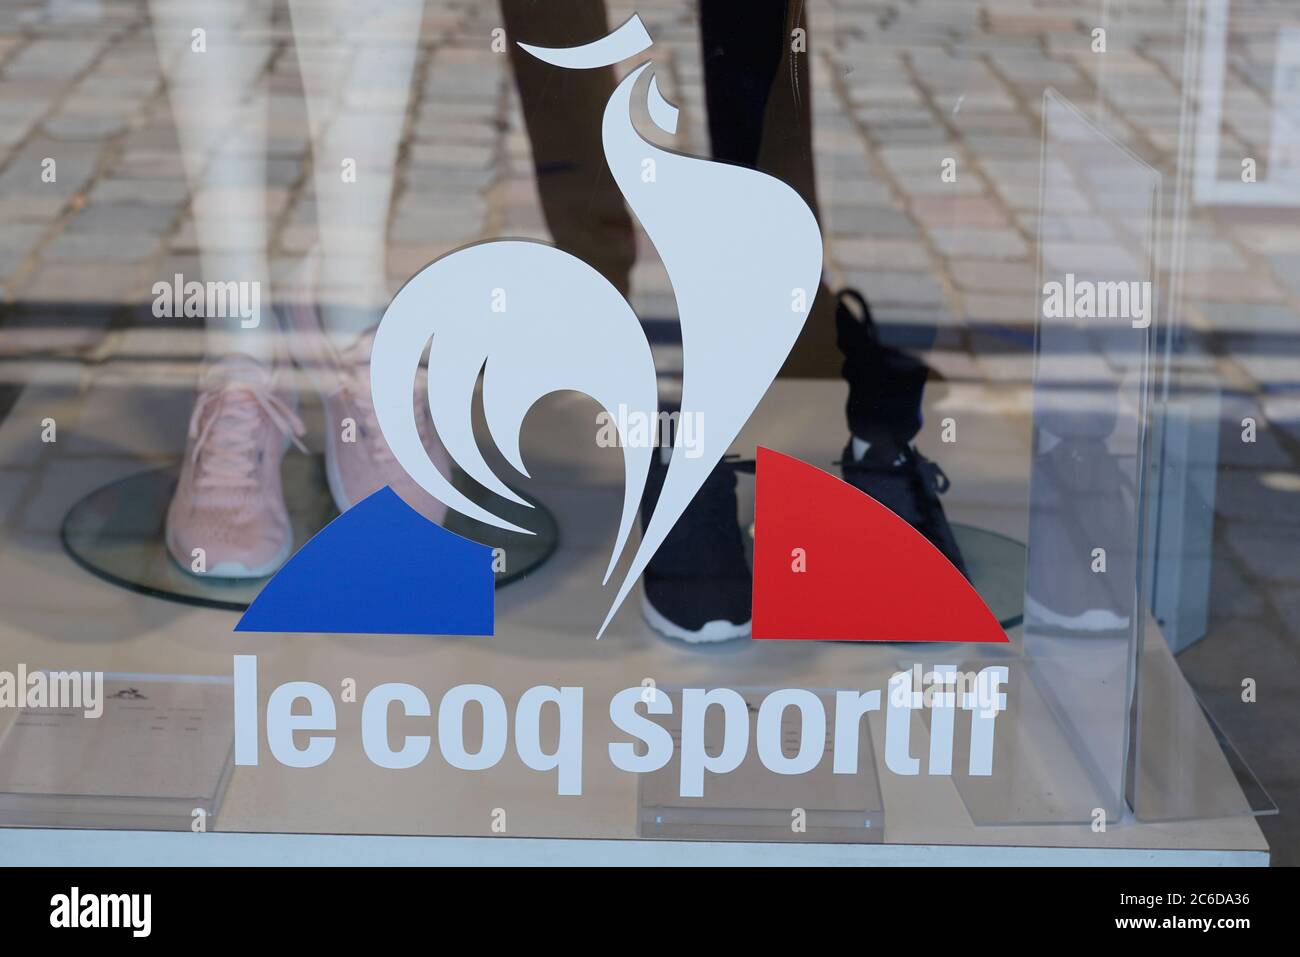 Burdeos , Aquitania / Francia - 07 07 2020 : le coq sportif logo y signo de  texto de la tienda de ropa deportiva proveedor de equipos deportivos  fabricante Fotografía de stock - Alamy